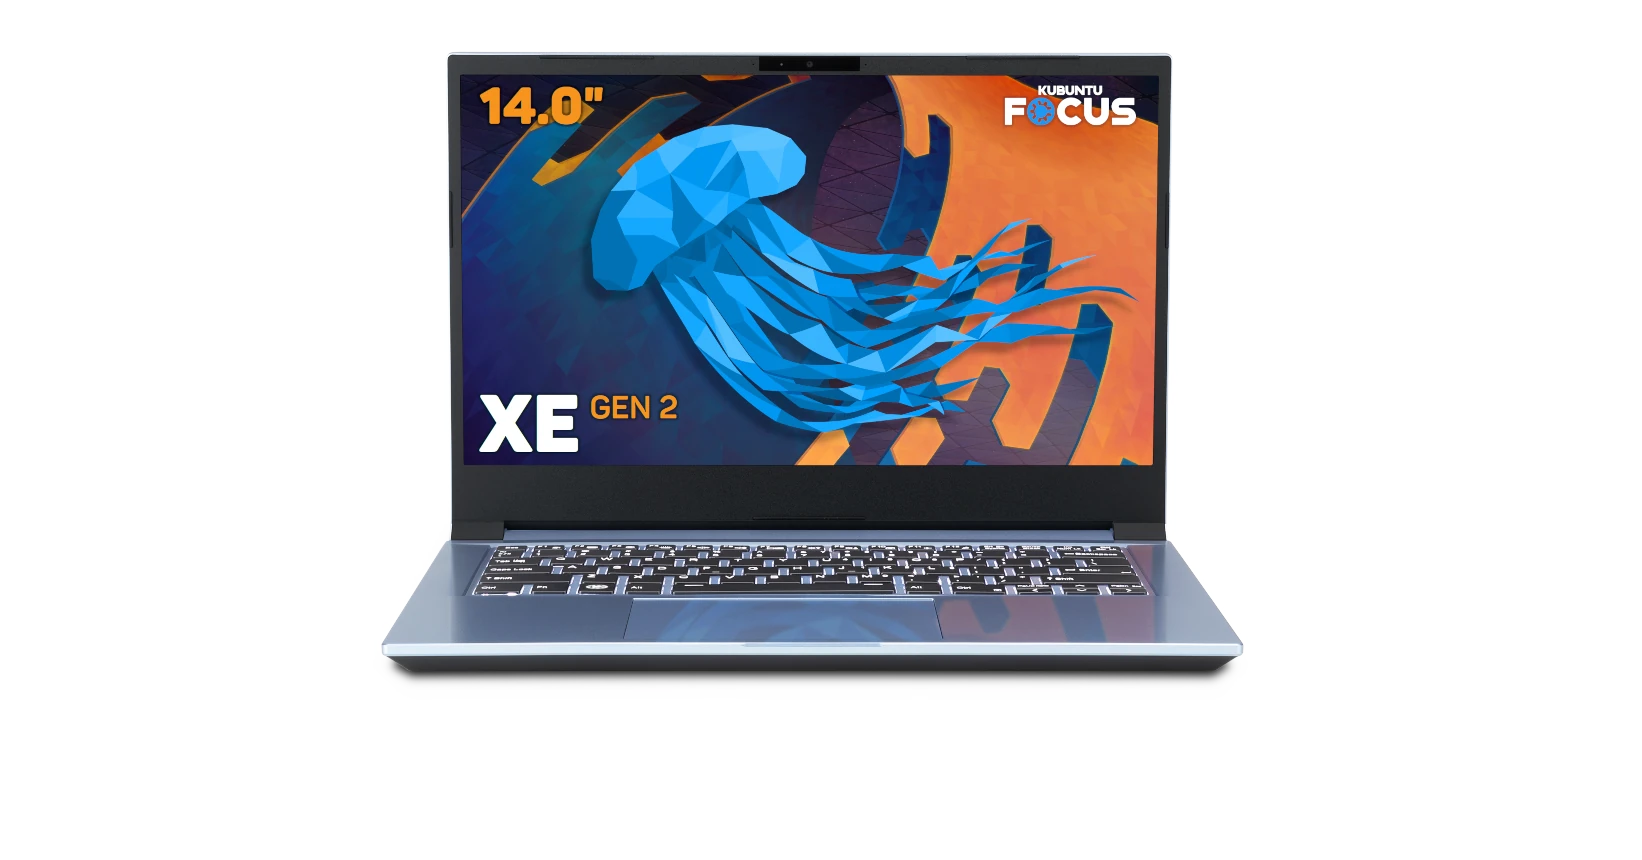 Kubuntu Focus XE GEN 2 Front